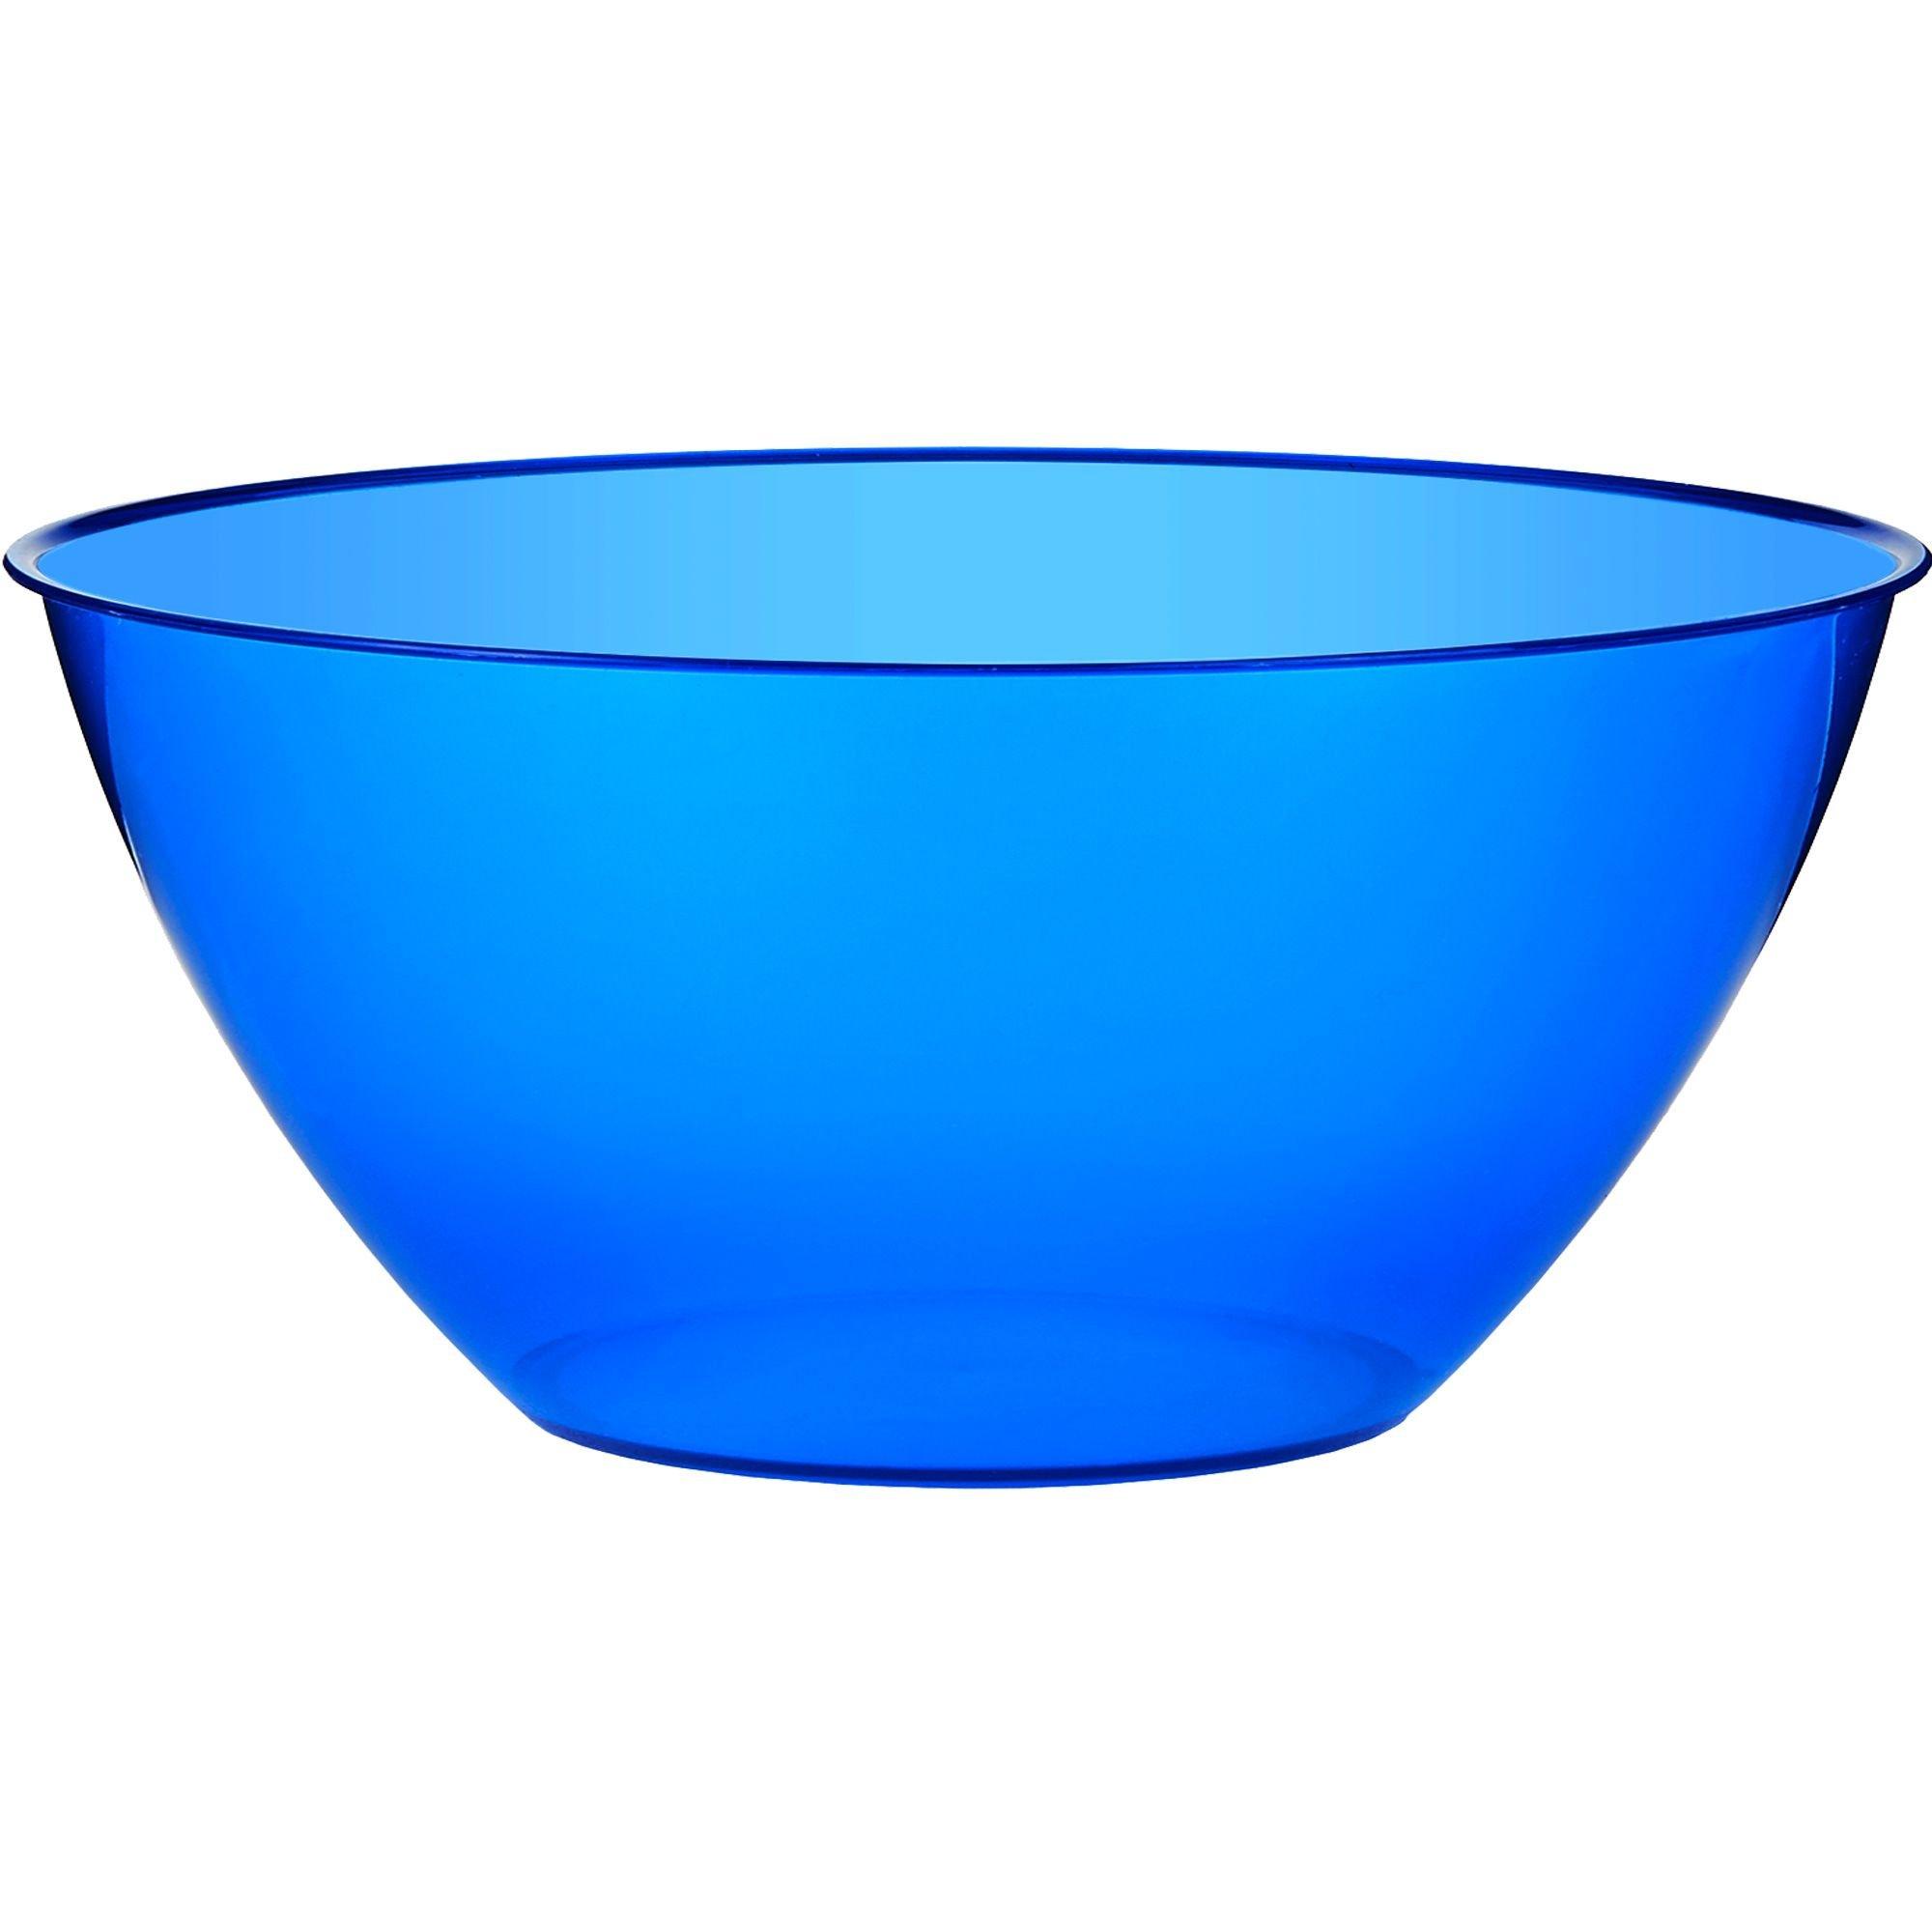 Cheap plastic colorful bowls